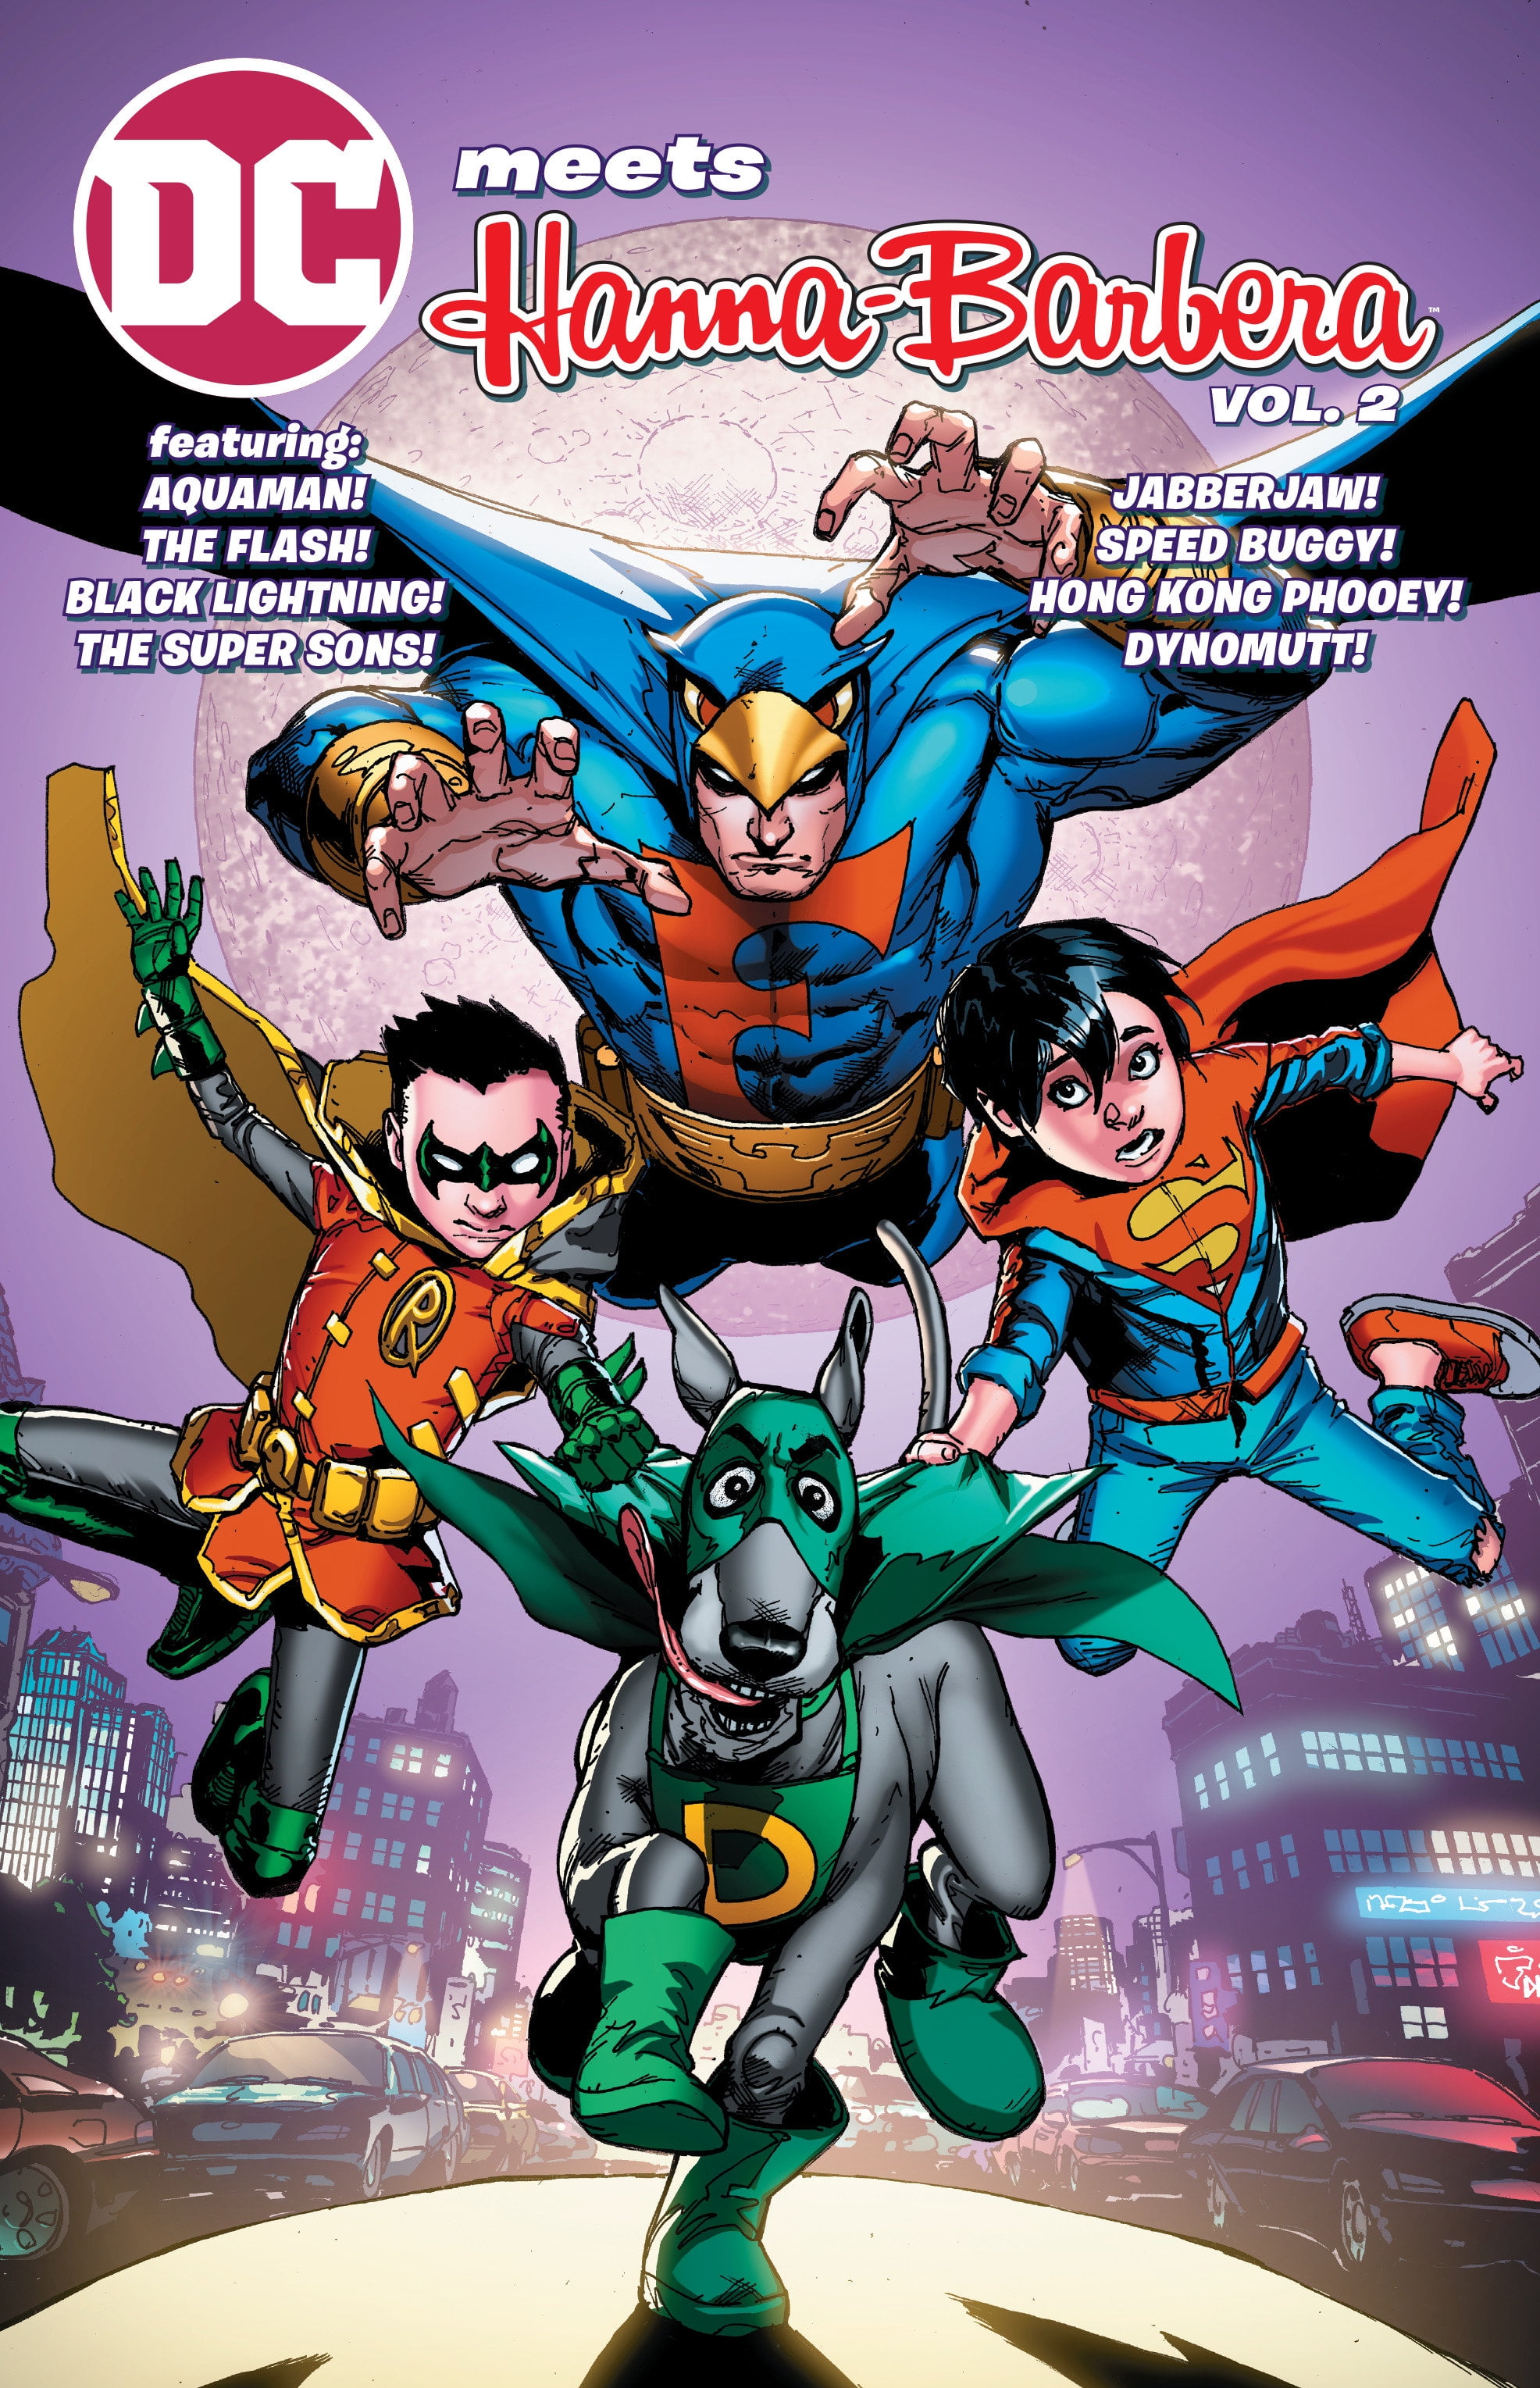 DC Meets Hanna Barbera Vol. 2 (Paperback) - Walmart.com